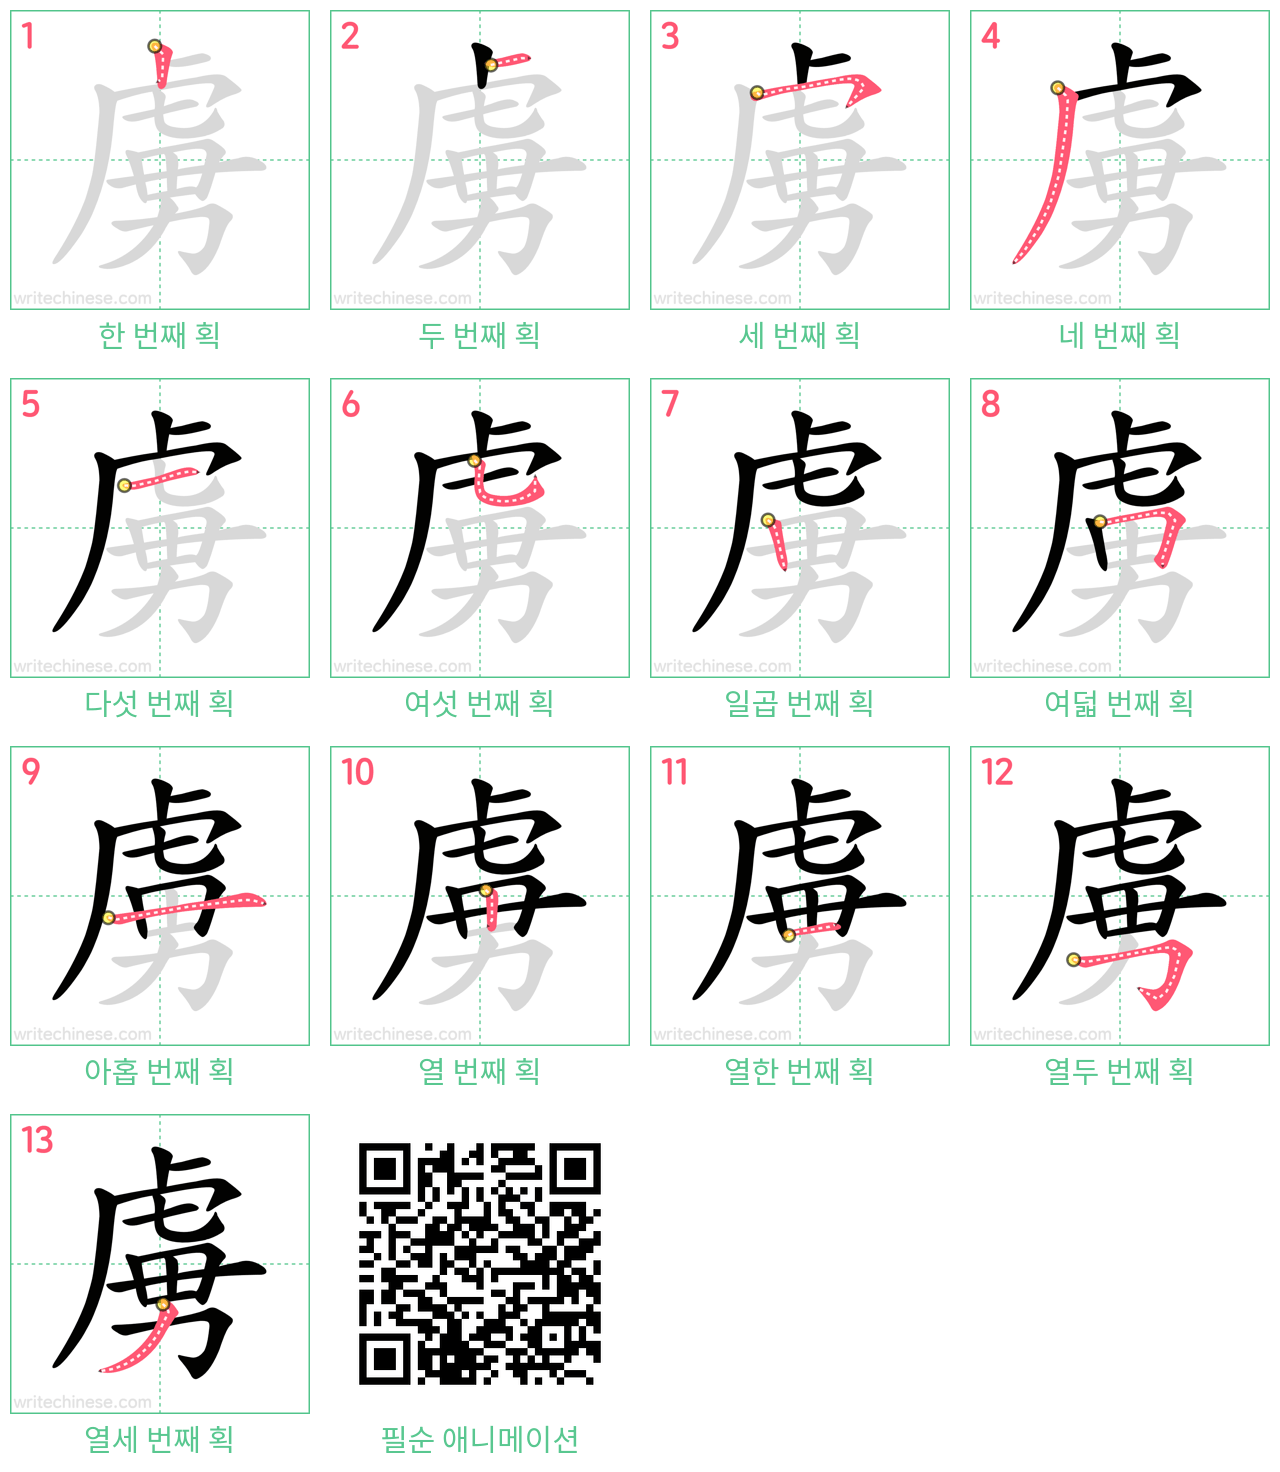 虜 step-by-step stroke order diagrams